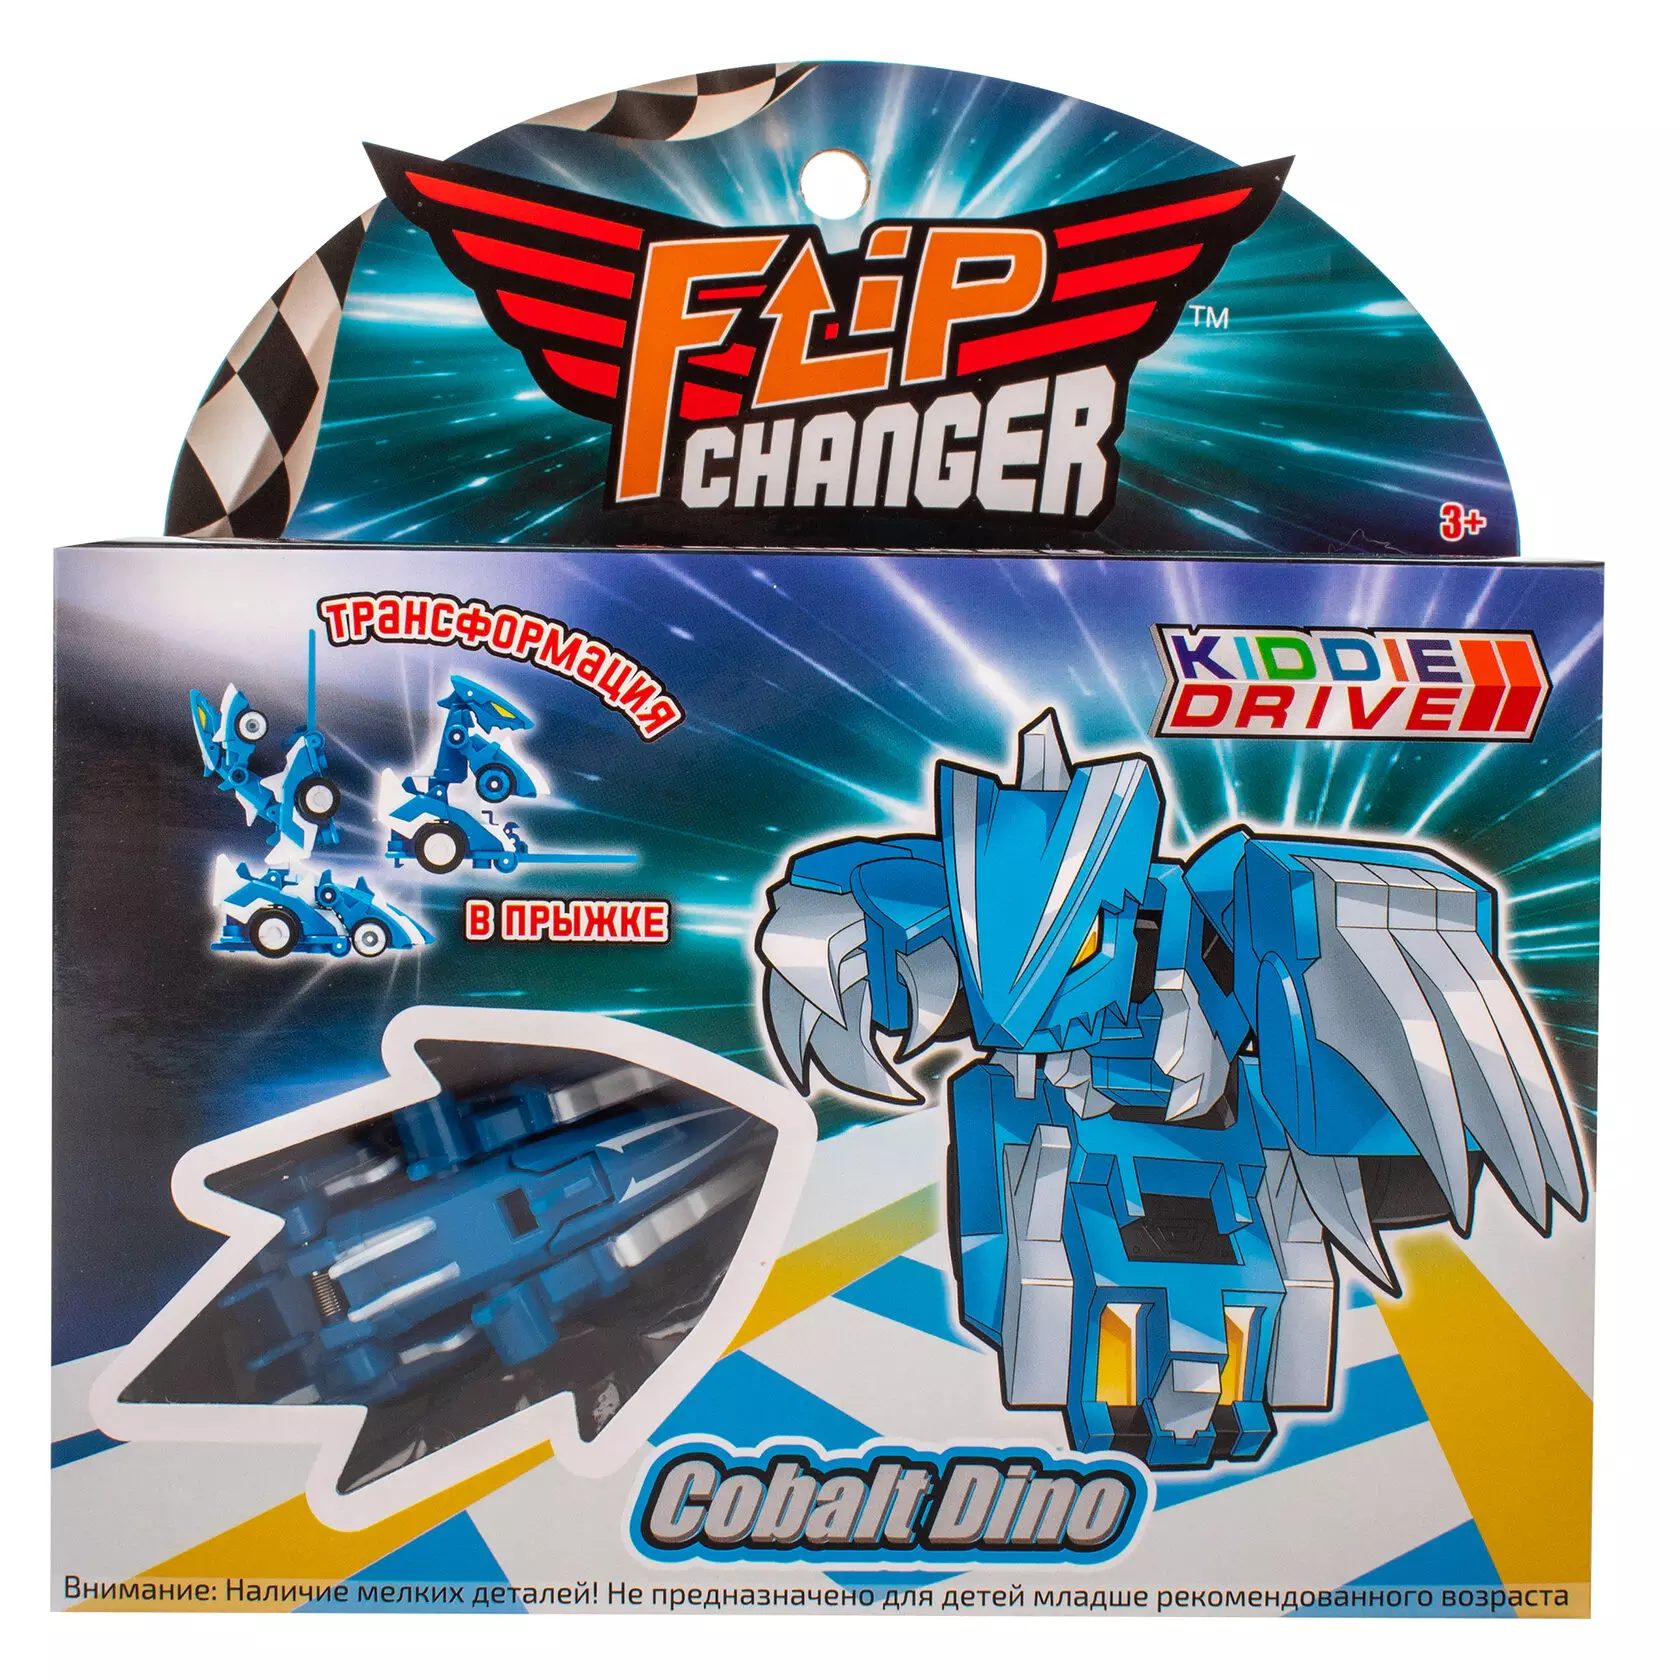 Игровой набор Машинка-трансформер Flip Changer Cobalt Dino KiddiePlay 106005